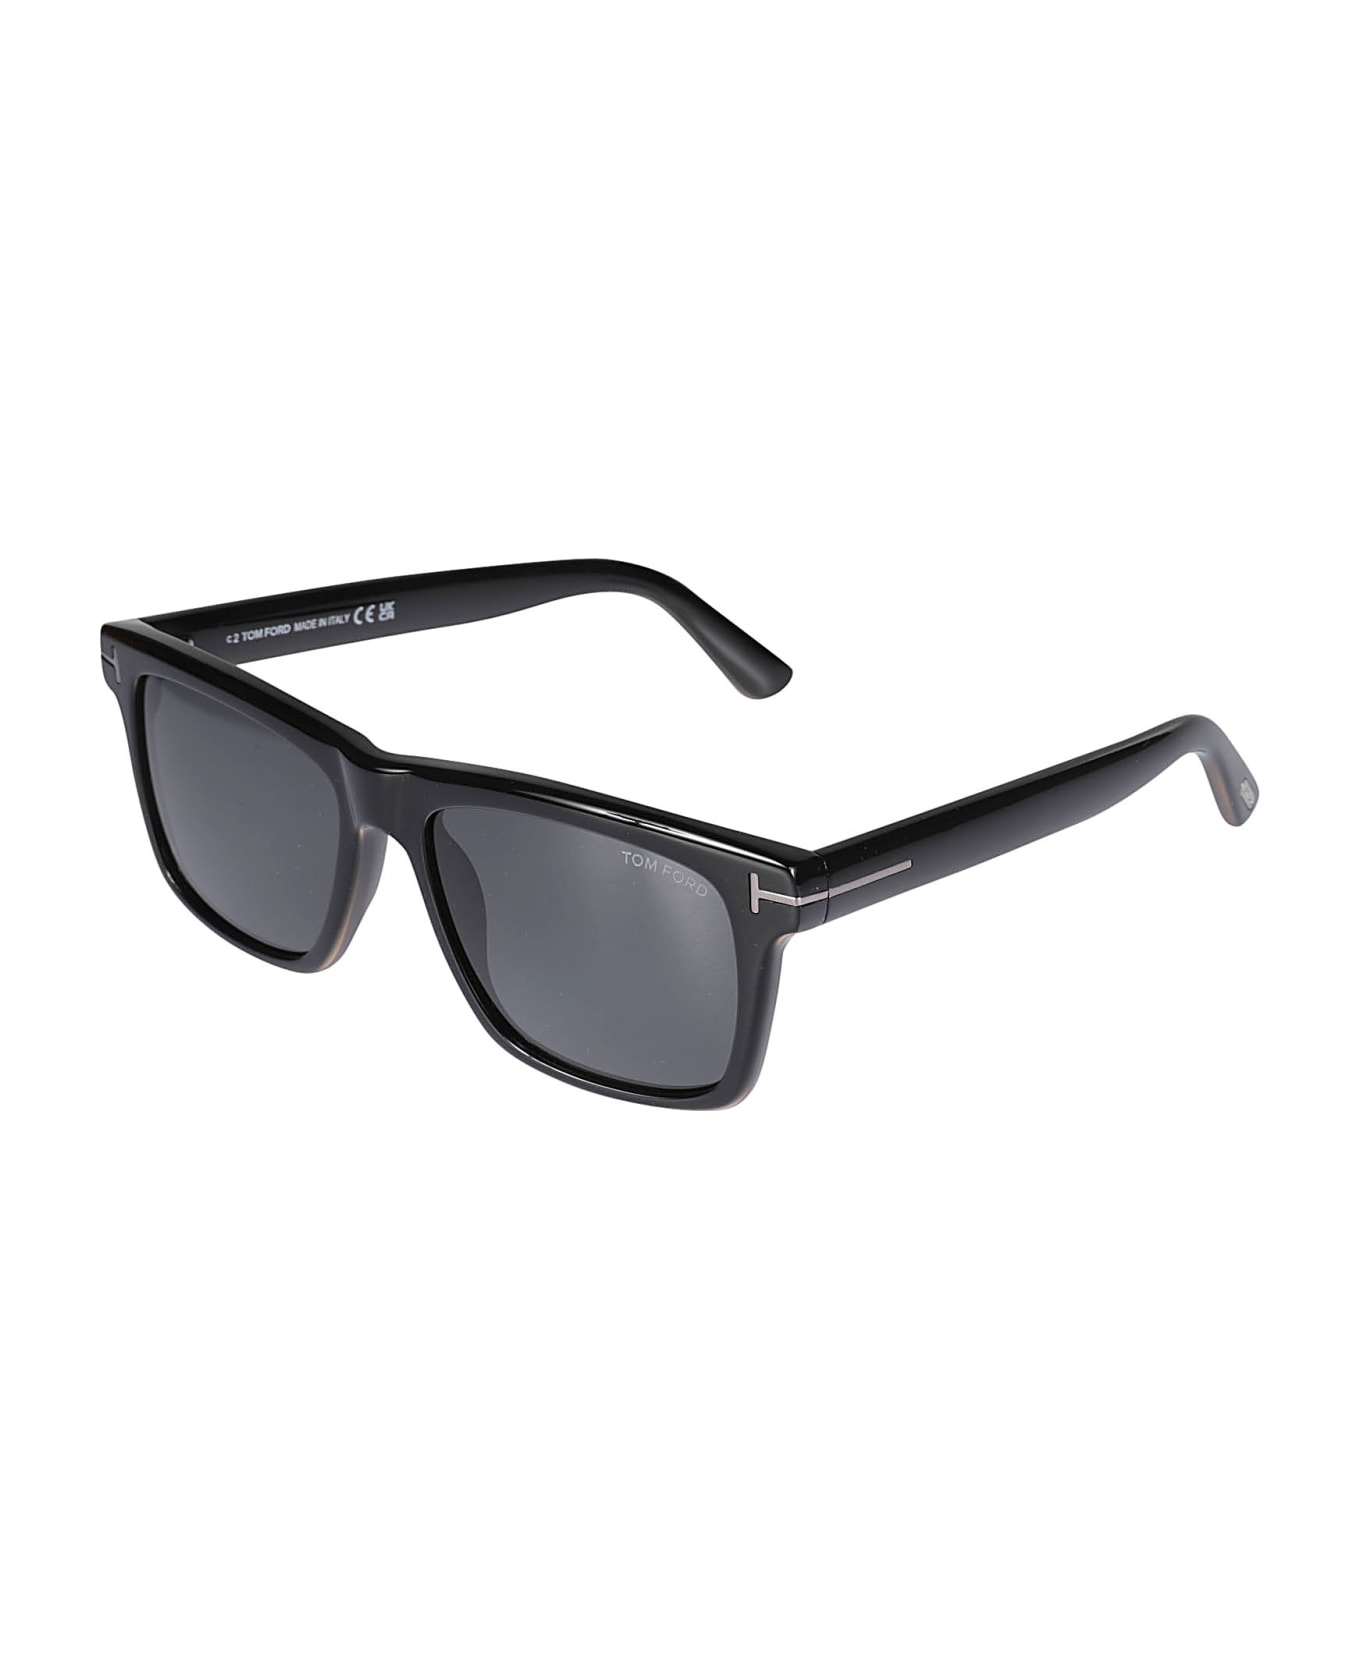 Tom Ford Eyewear Buckley Terminator Sunglasses - N/A